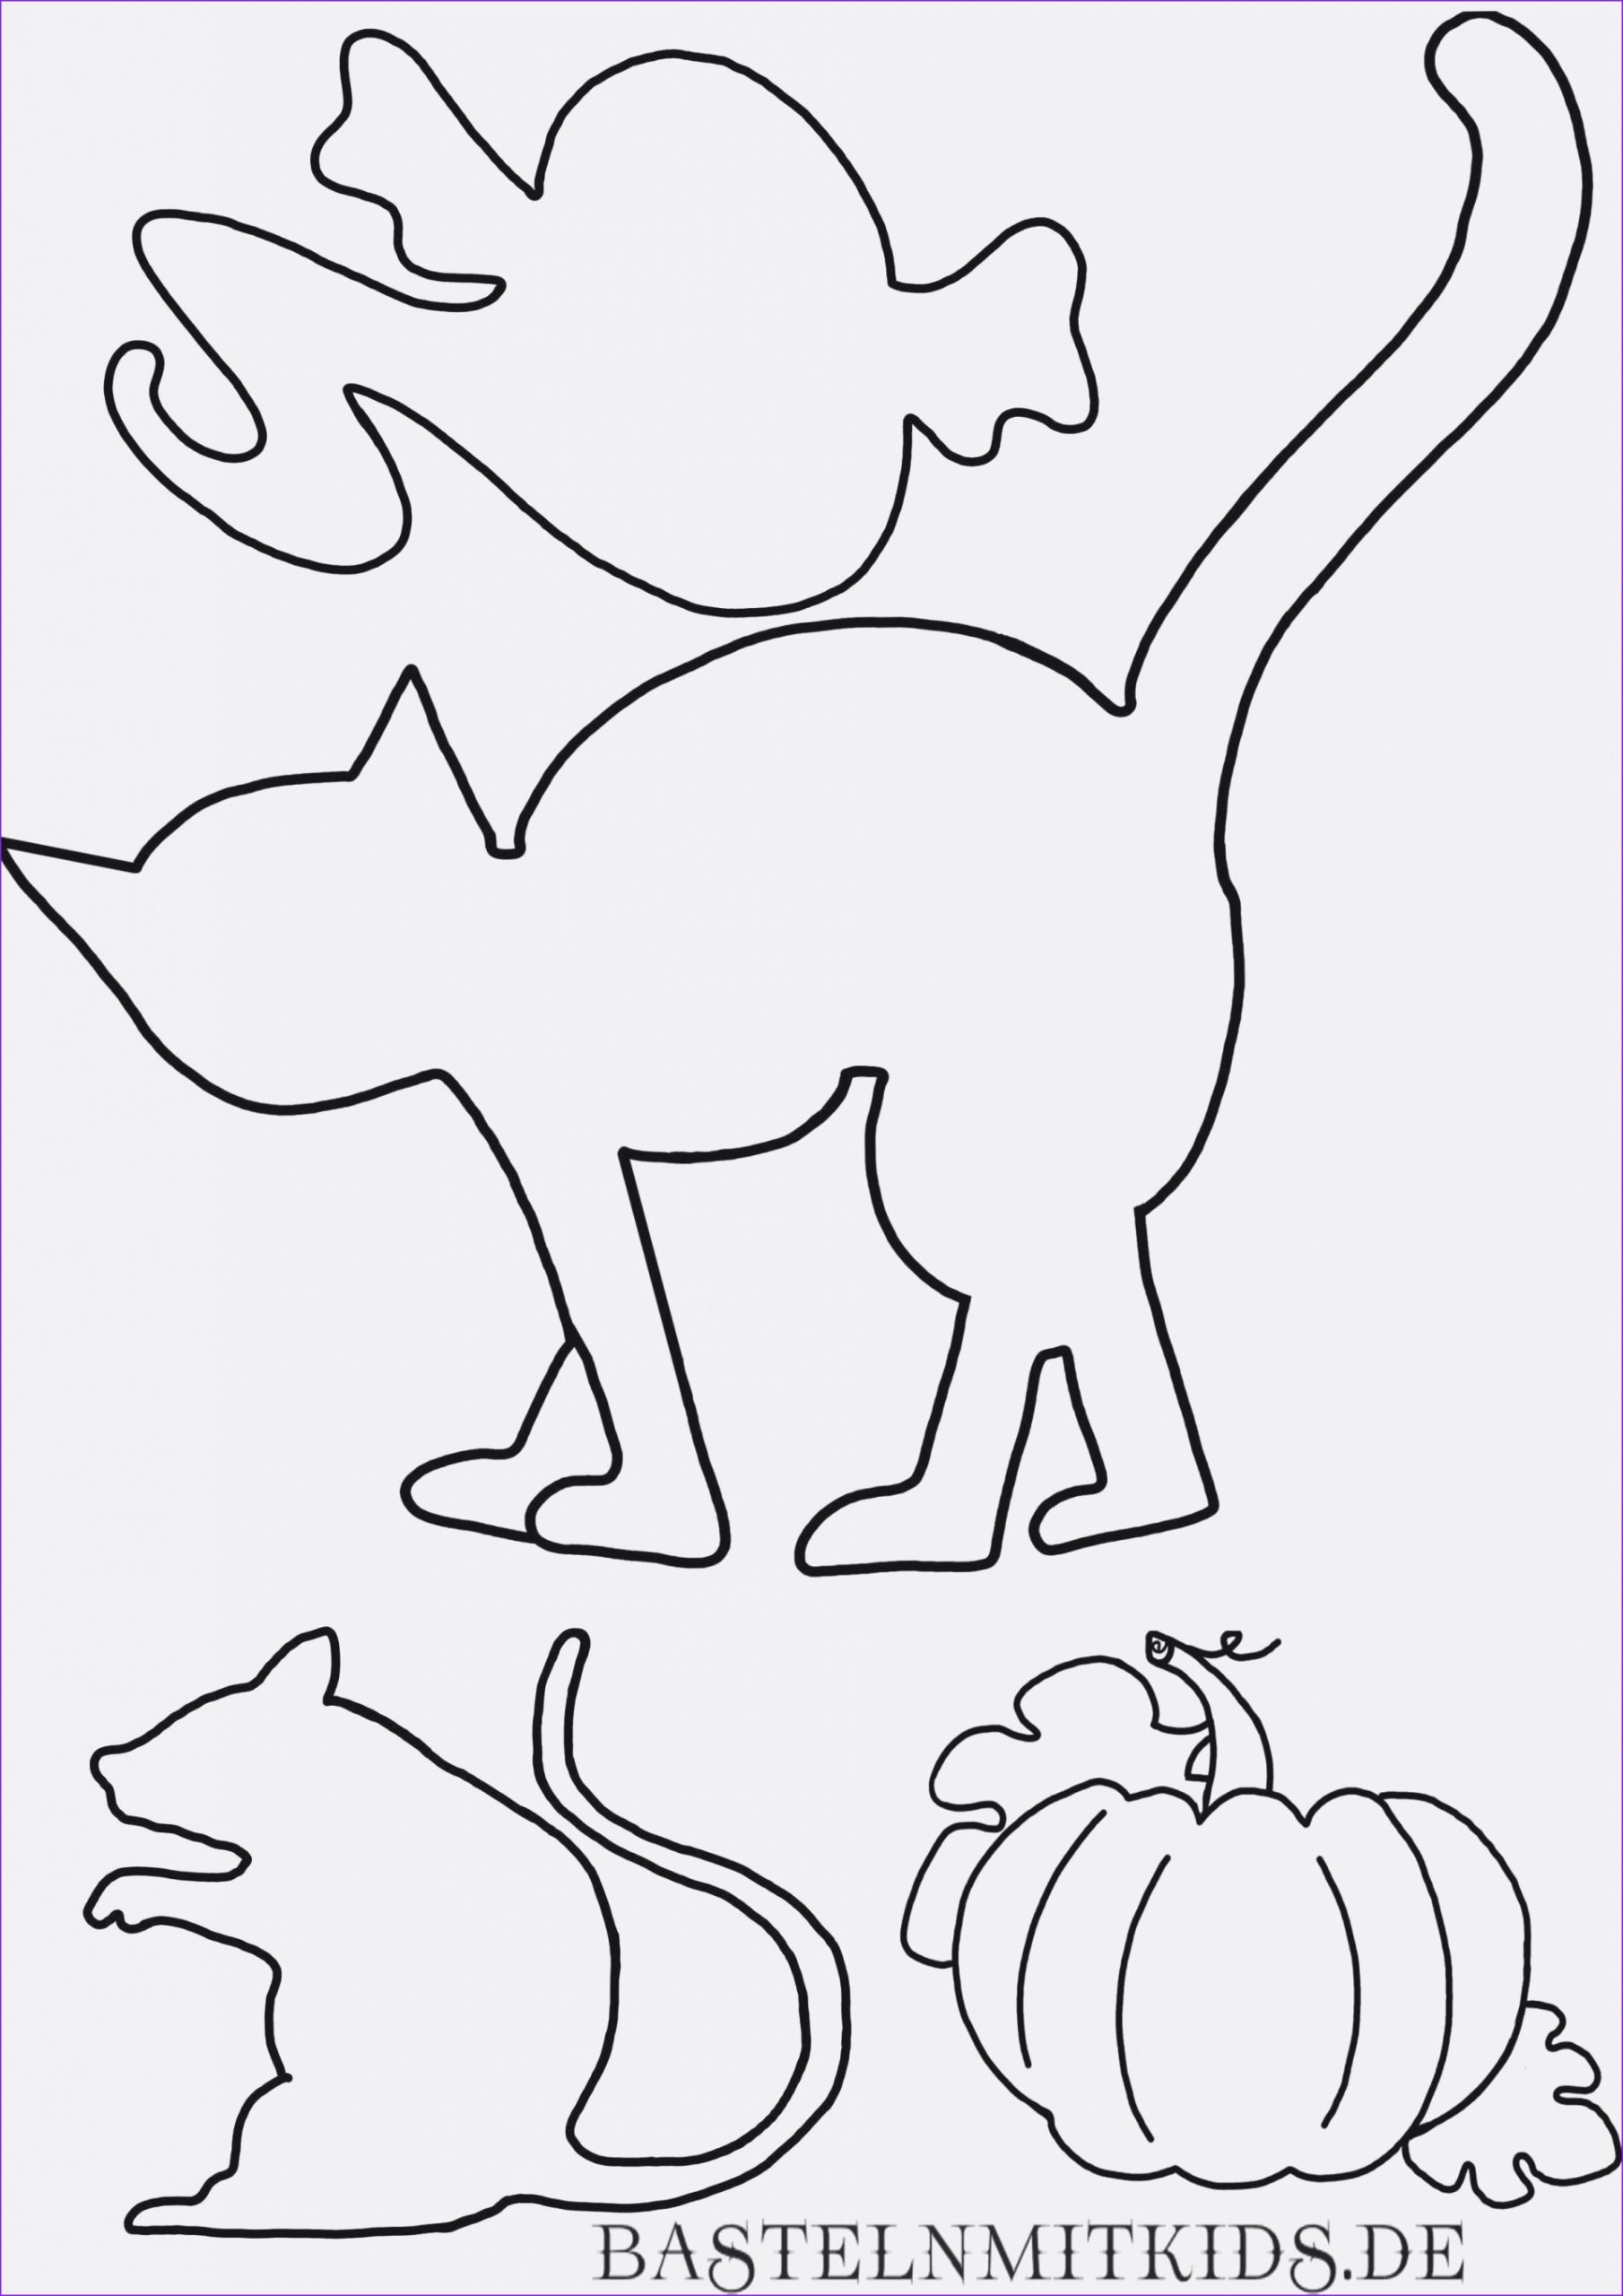 Zeichnungsvorlagen Gratis - Malvorlagen Für Kinder bestimmt für Zeichnungsvorlagen Für Kindergartenkinder